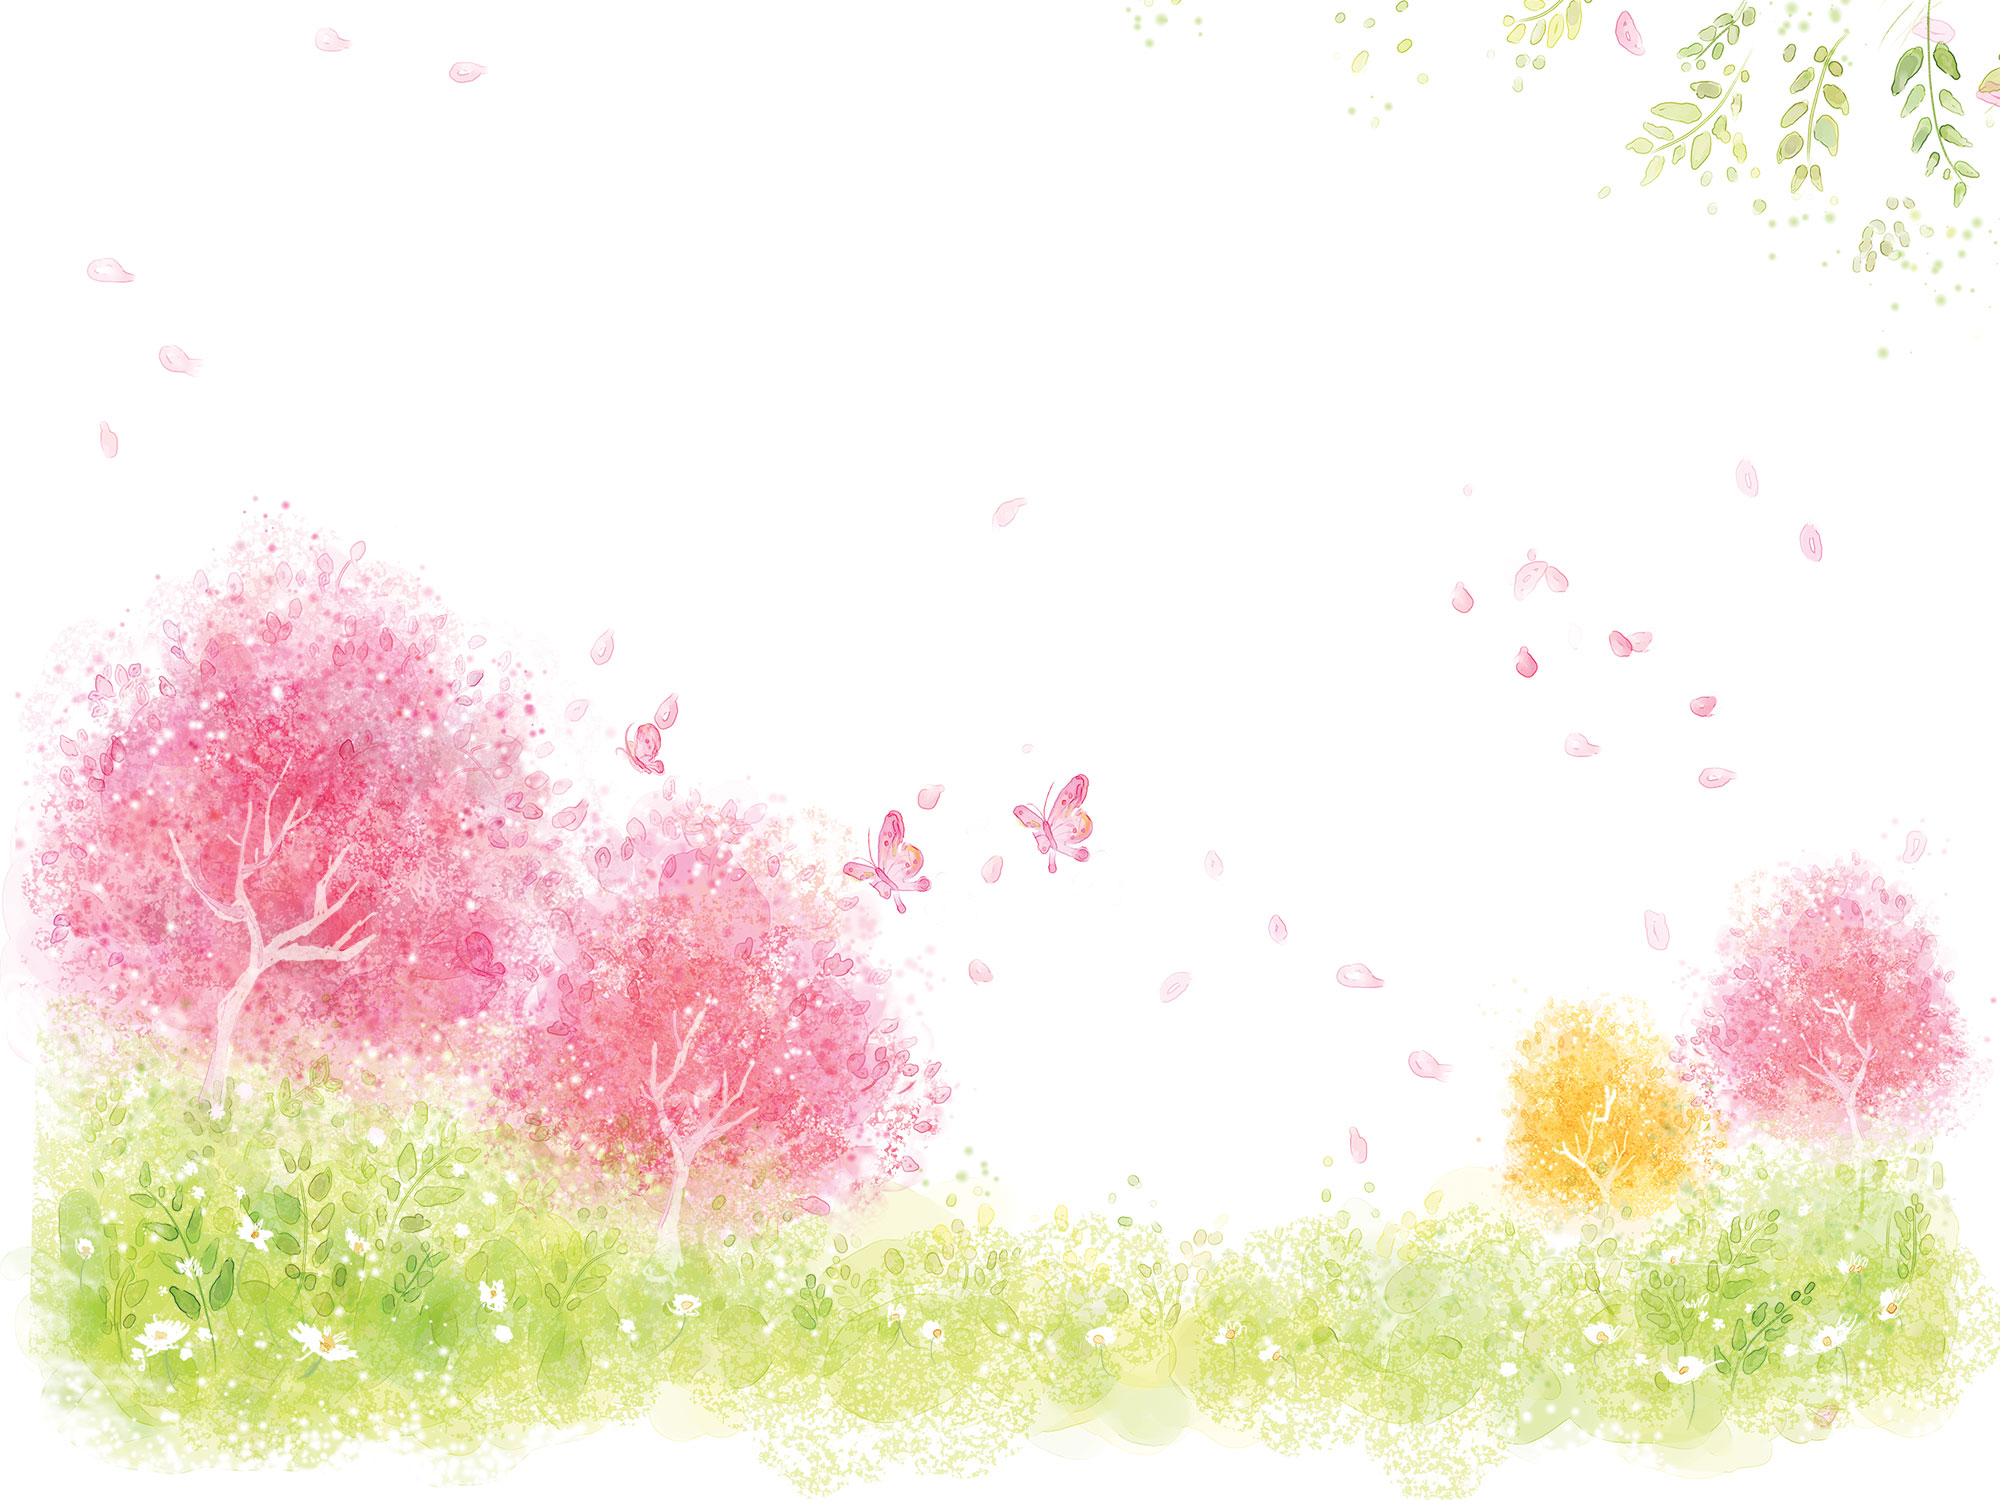 花の壁紙 背景のイラスト 画像no 019 壁紙 淡い色彩 水彩画風12 無料のフリー素材集 百花繚乱